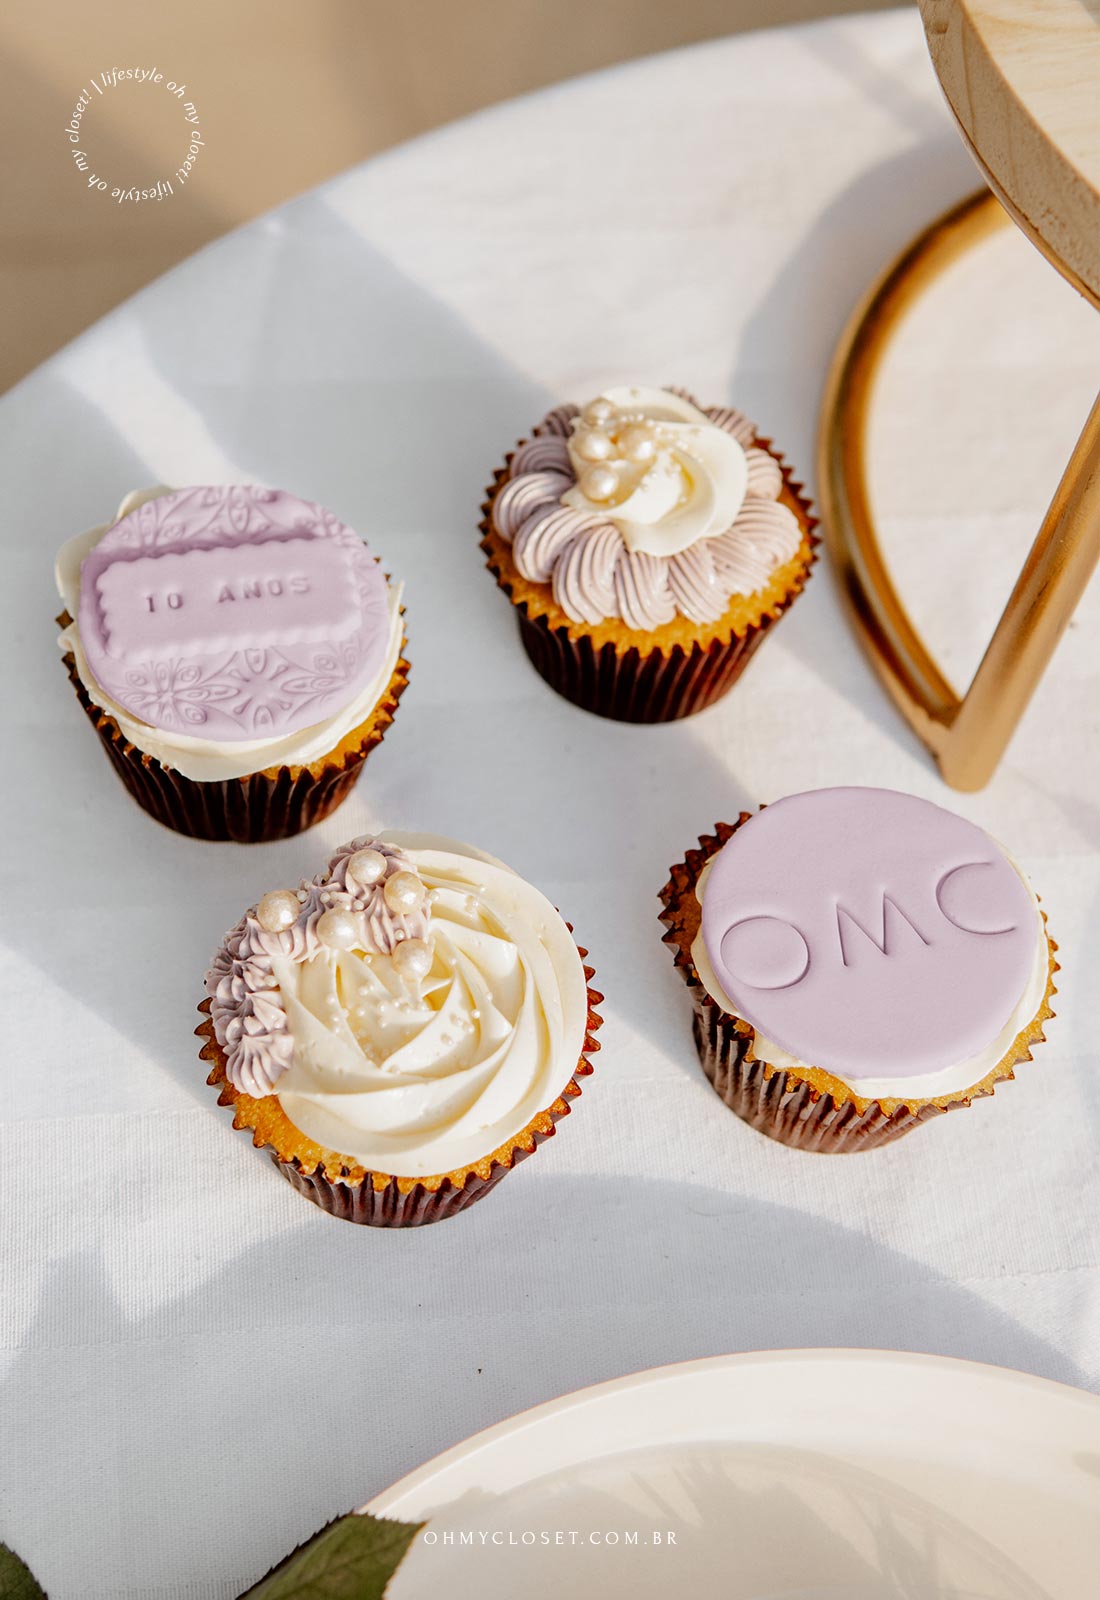 Cupcakes da comemoração dos 10 anos do OMC